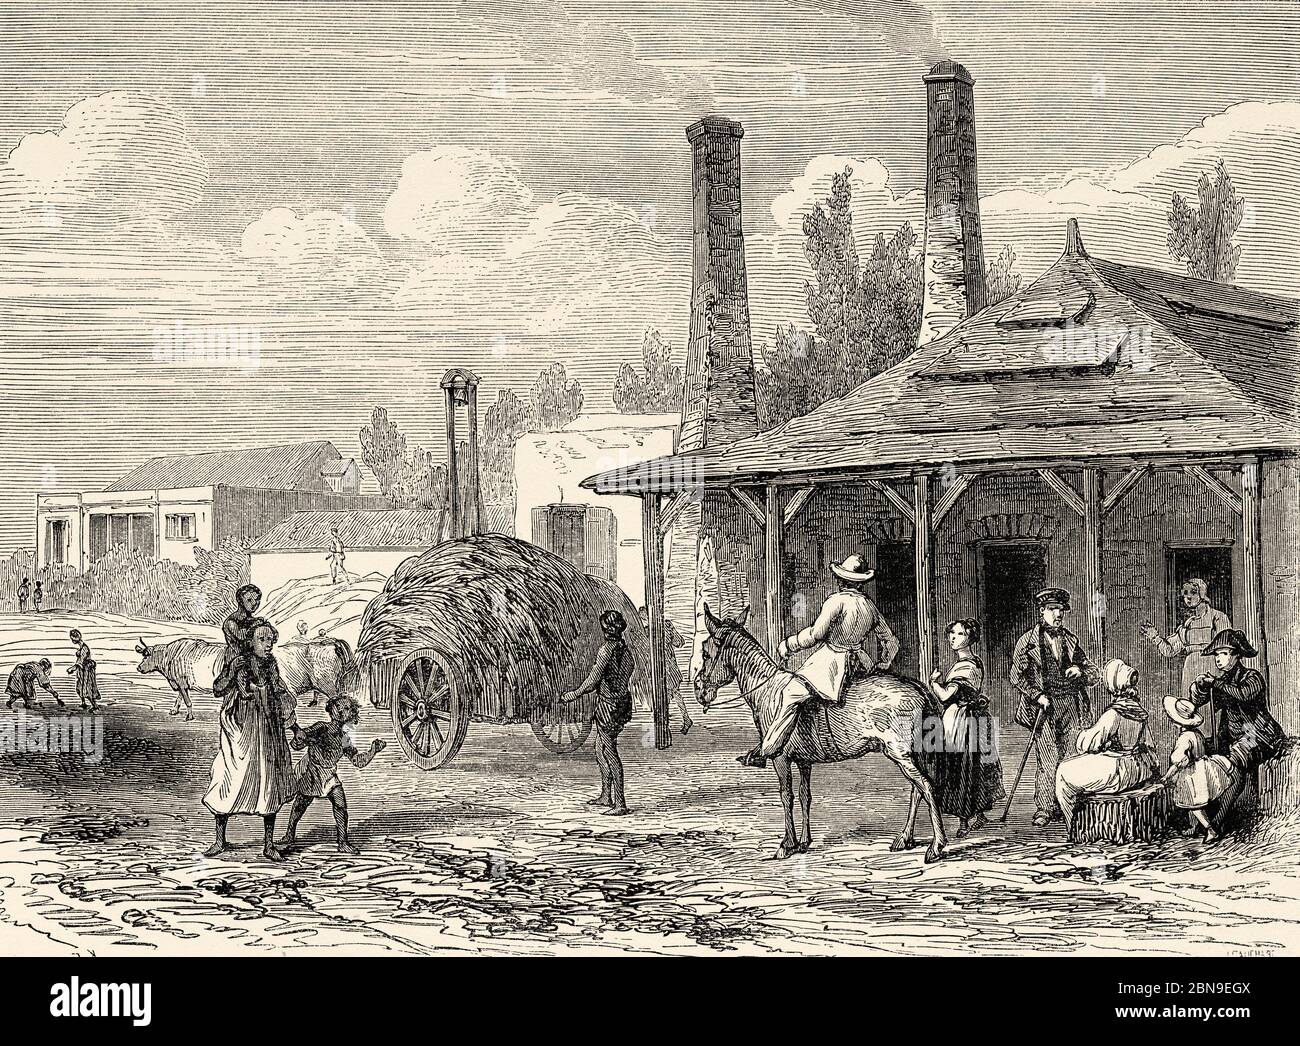 Alte Zuckerrohrfabrik, Insel Mauritius. Mascarene Islands Südafrika, Alte Grafik aus dem 19. Jahrhundert, Le Tour du Monde 1863 Stockfoto